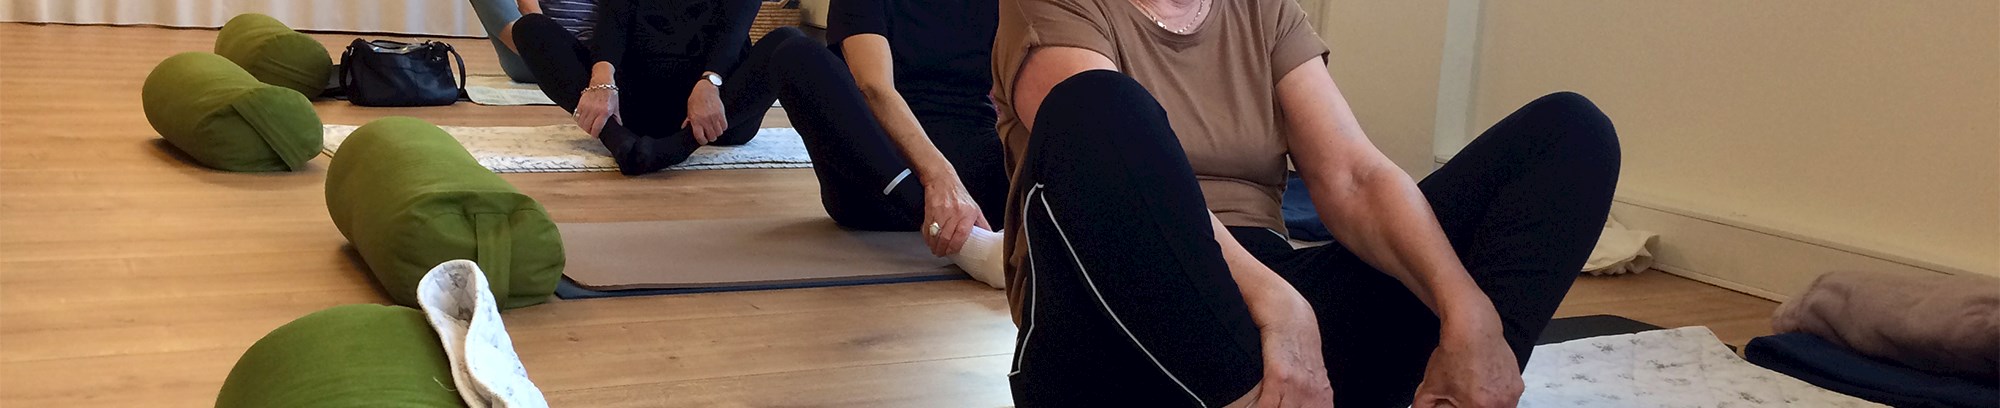 Yoga kursister, der laver stræk øvelser på yogamåtter